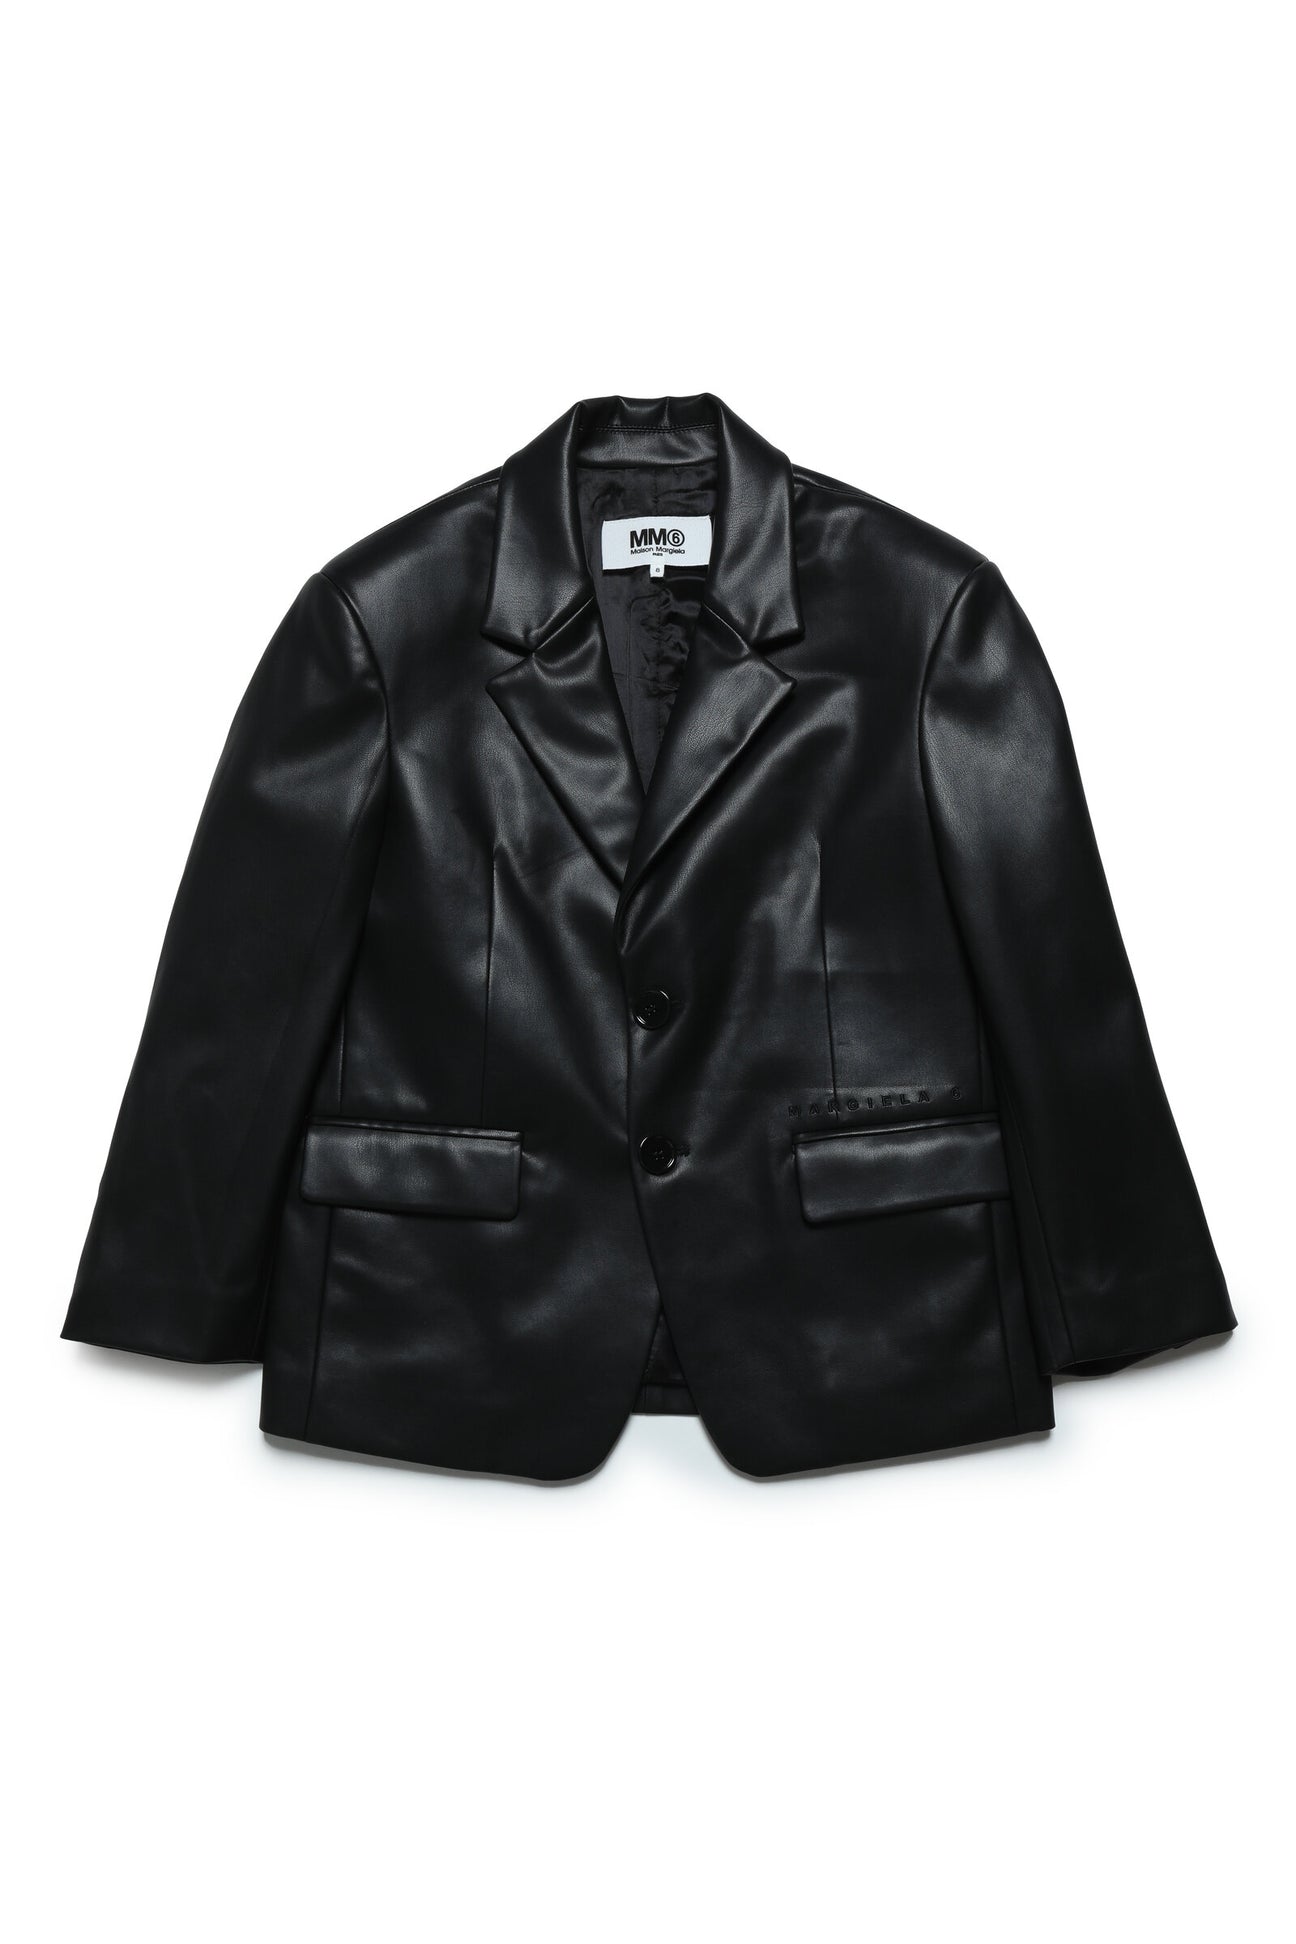 Imitation leather blazer model jacket Imitation leather blazer model jacket